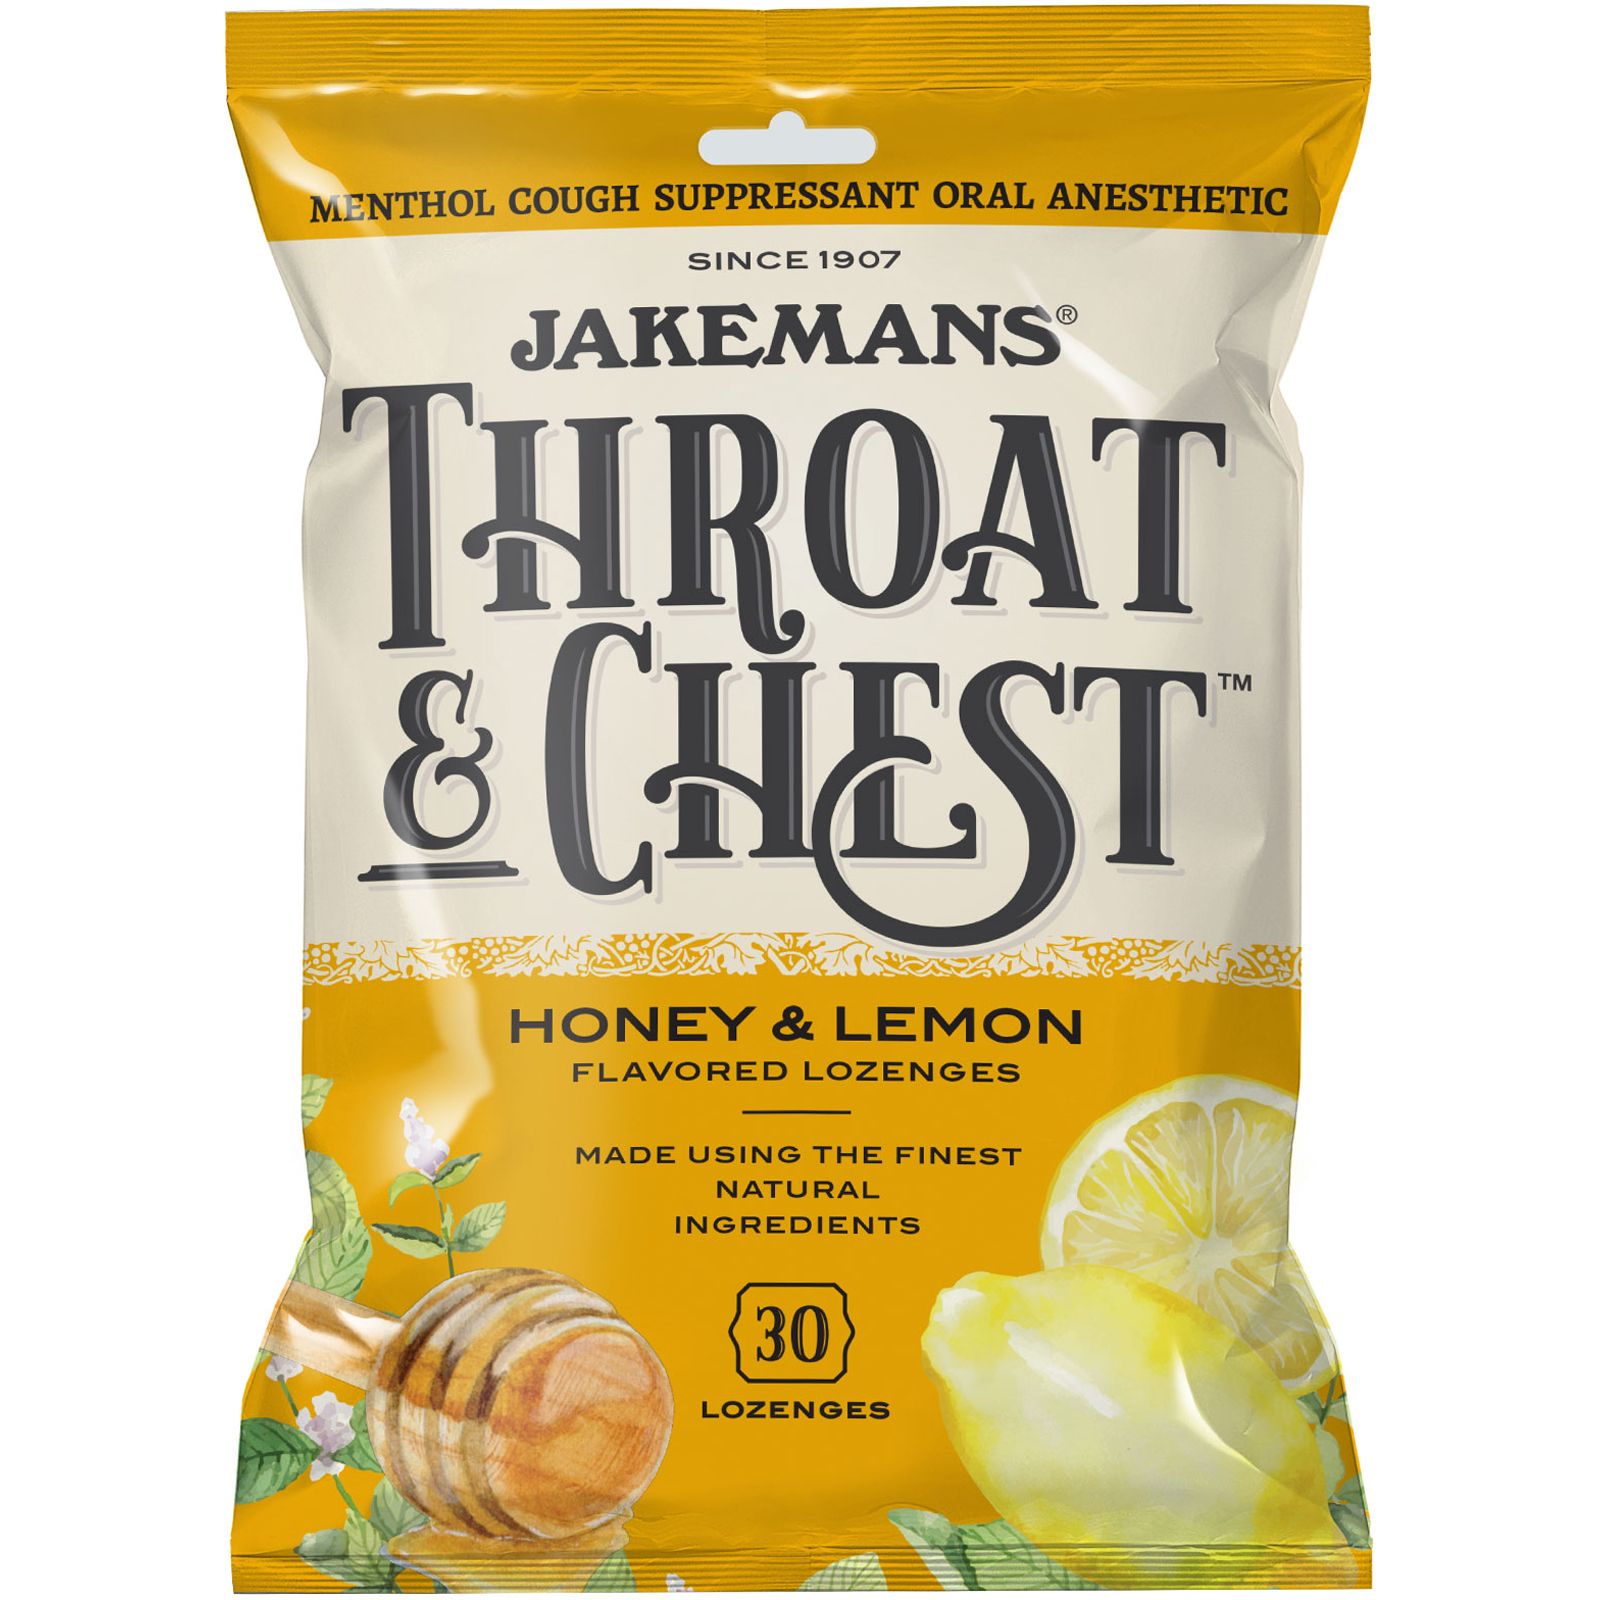 Jakemans Леденцы от кашля Throat & Chest со вкусом меда и лимона 30 леденцов